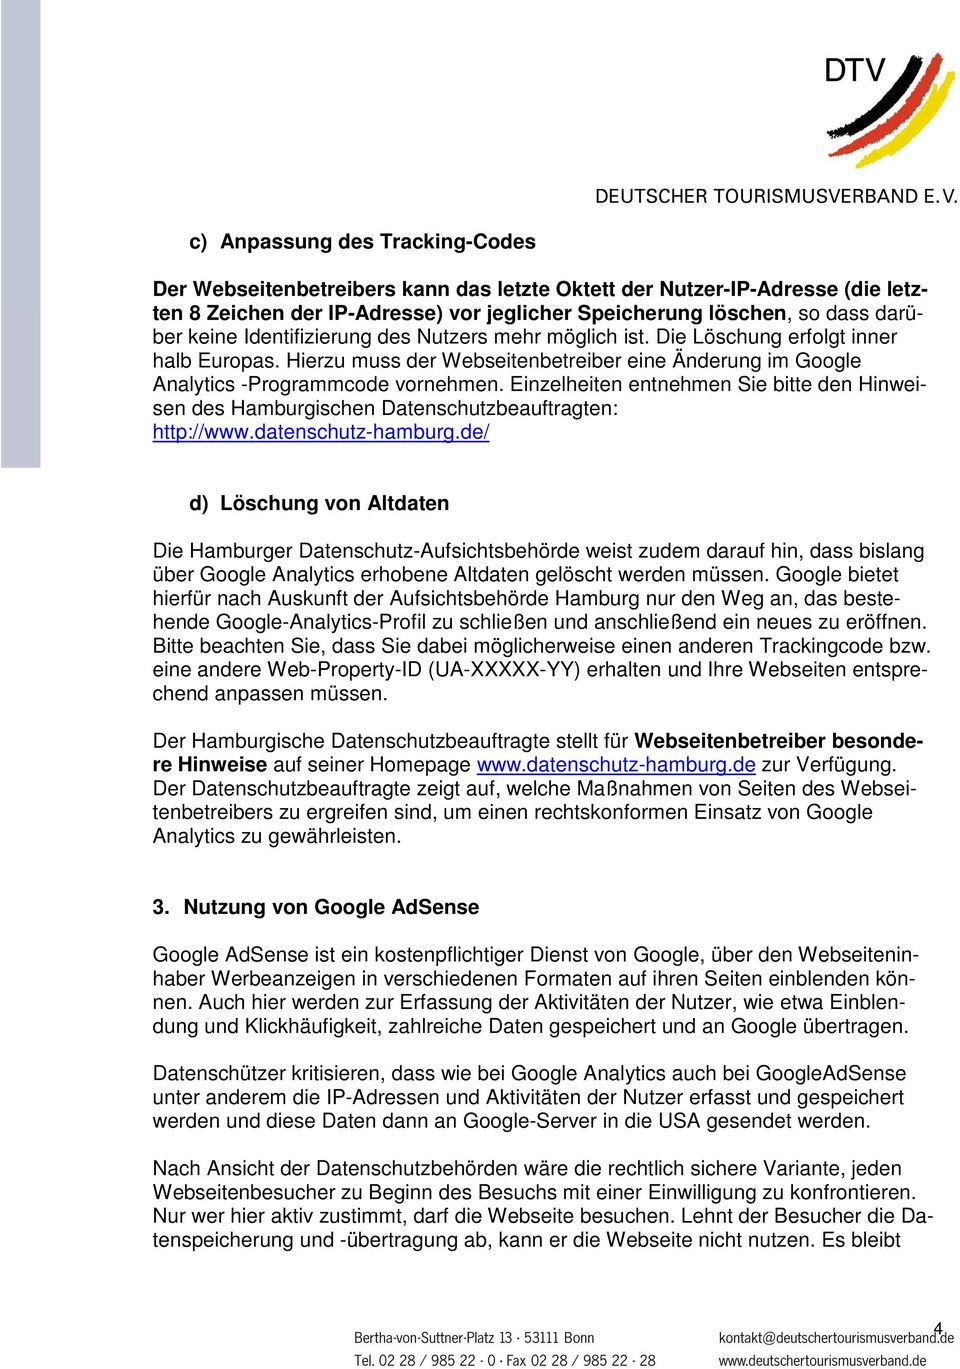 Einzelheiten entnehmen Sie bitte den Hinweisen des Hamburgischen Datenschutzbeauftragten: http://www.datenschutz-hamburg.